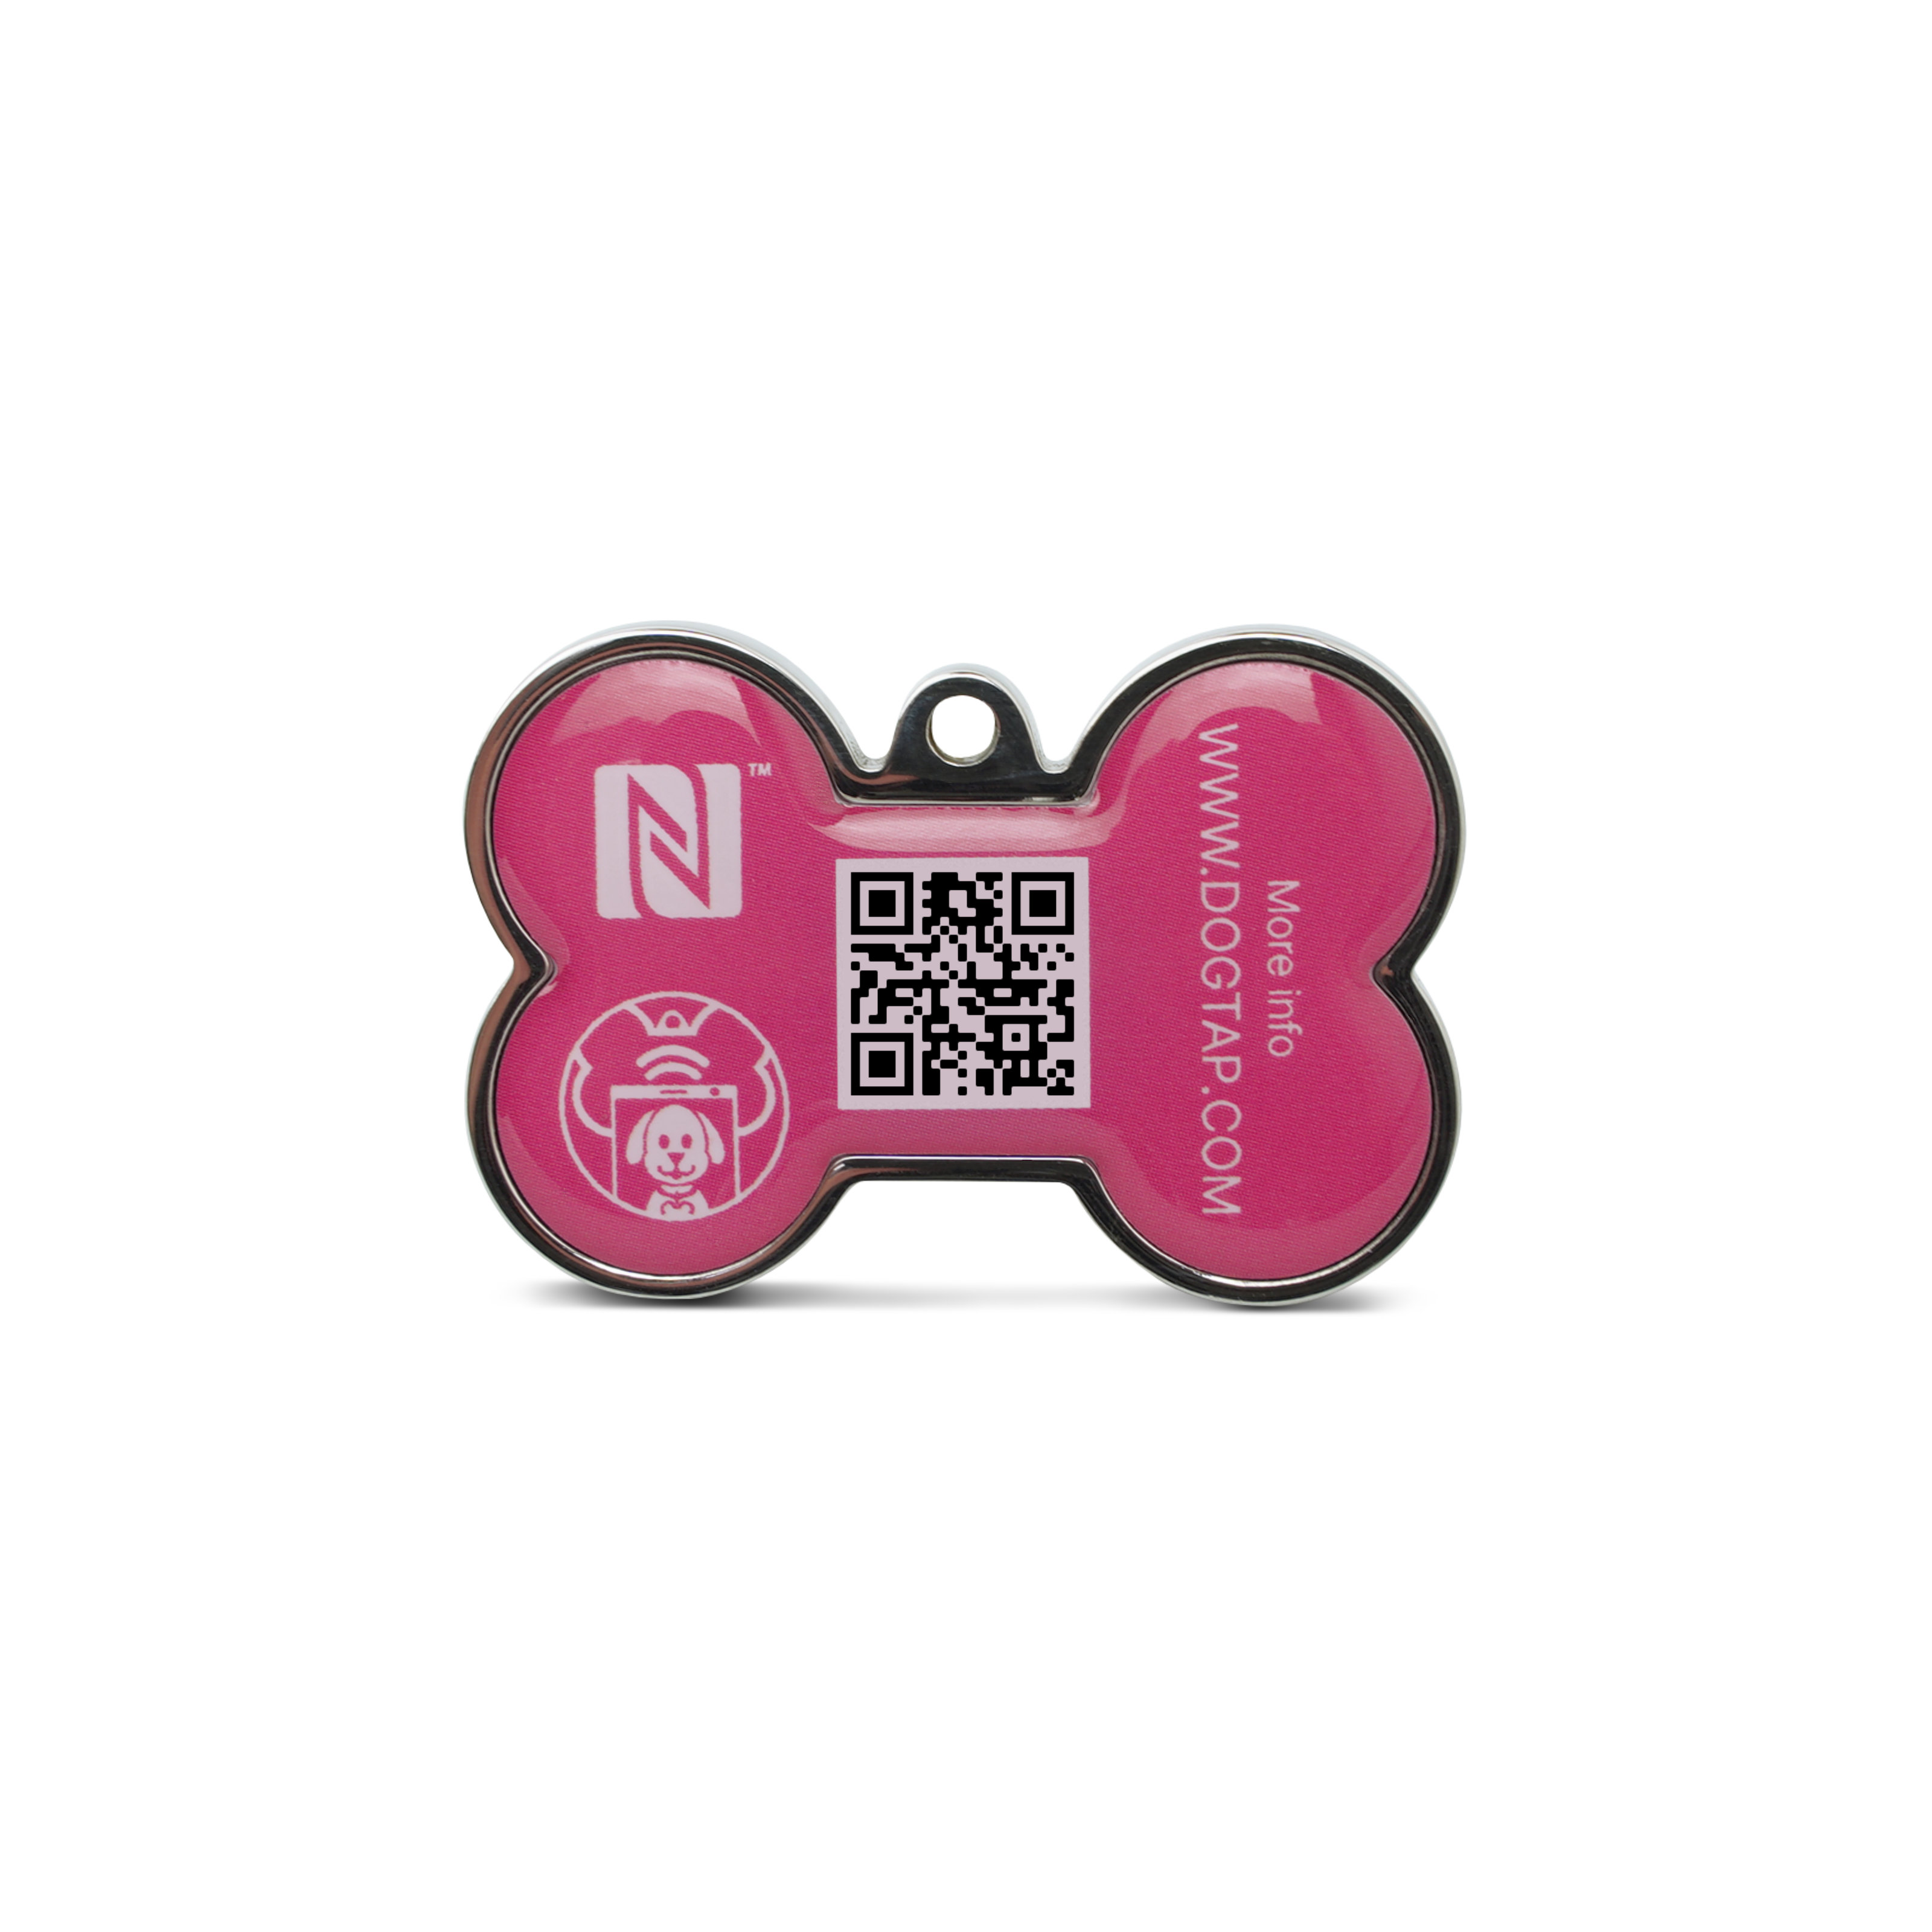 Dogtap Solid - Digital dog tag - PVC / Metal - 41.6 x 28.5 x 4.6 mm - pink